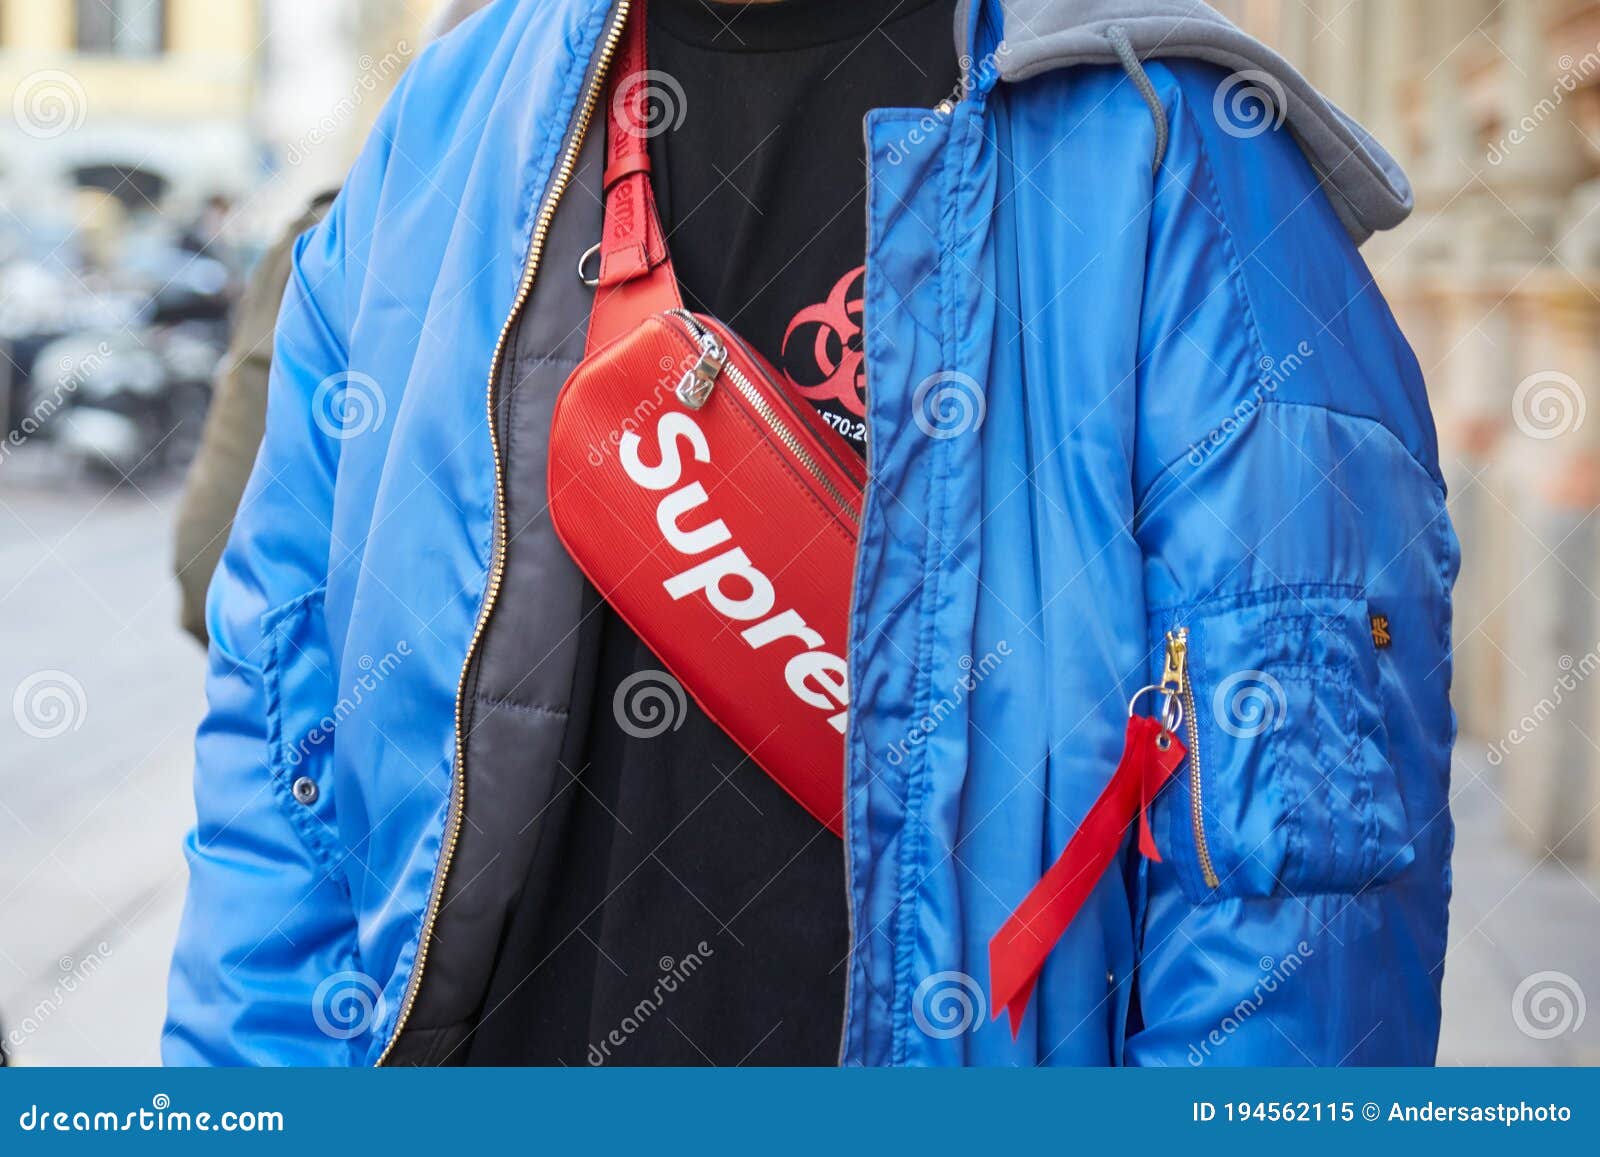 blue supreme jacket